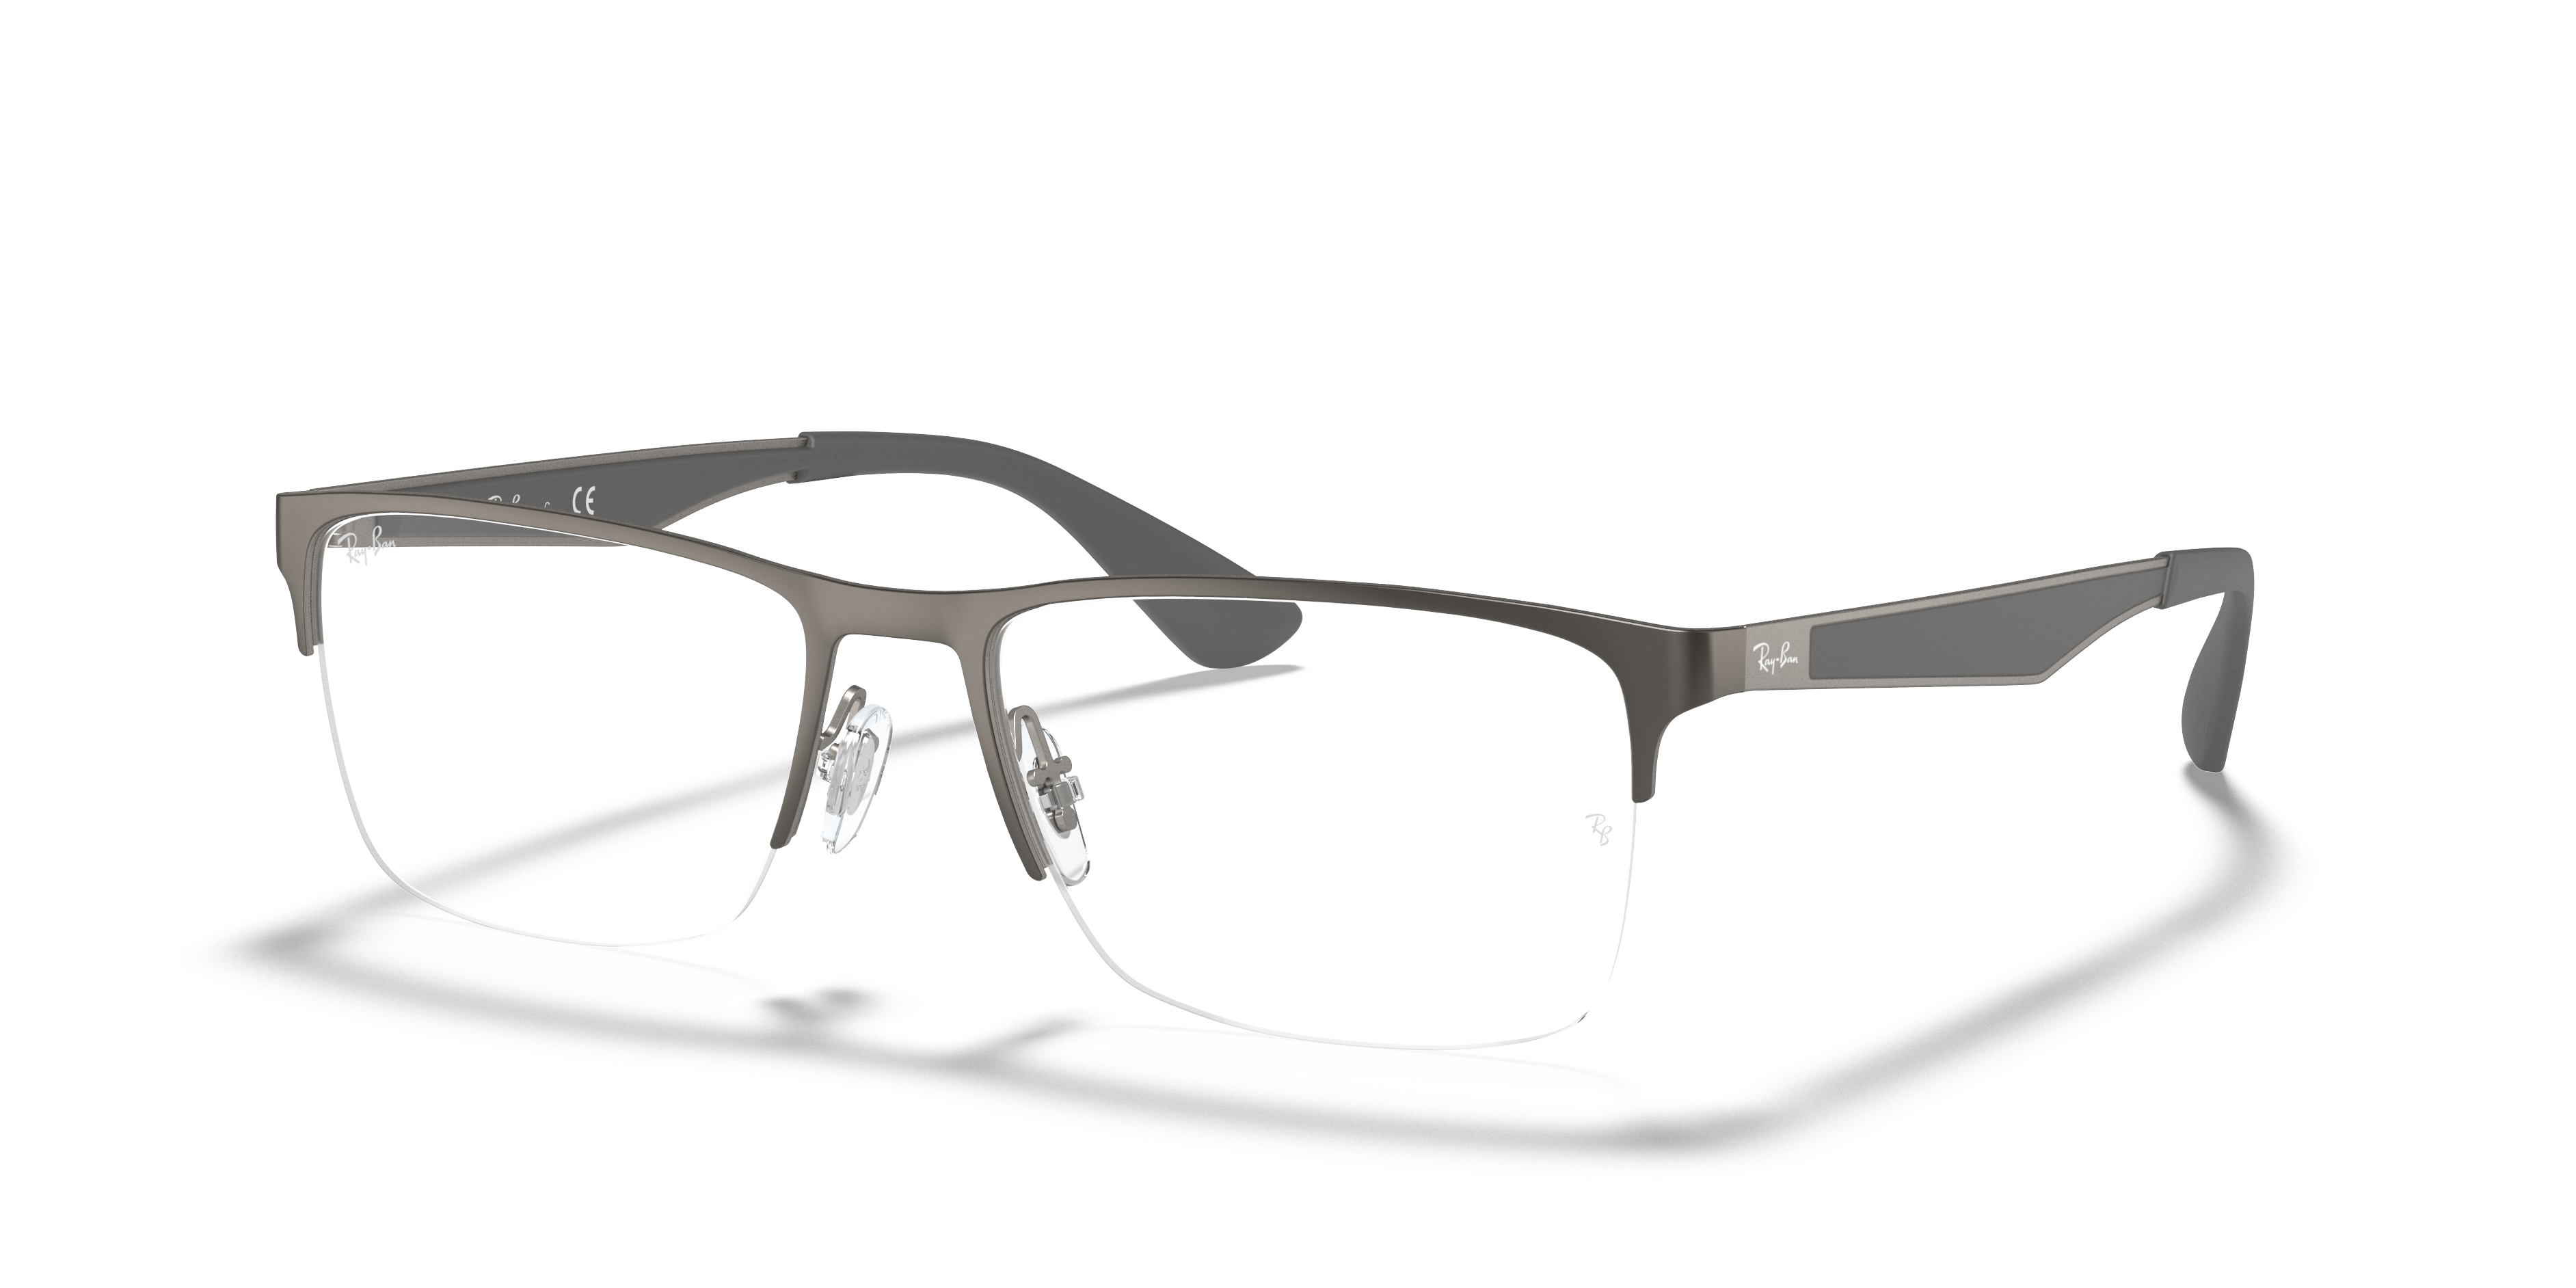 Rb6335 Optics Eyeglasses with Gunmetal Frame | Ray-Ban®